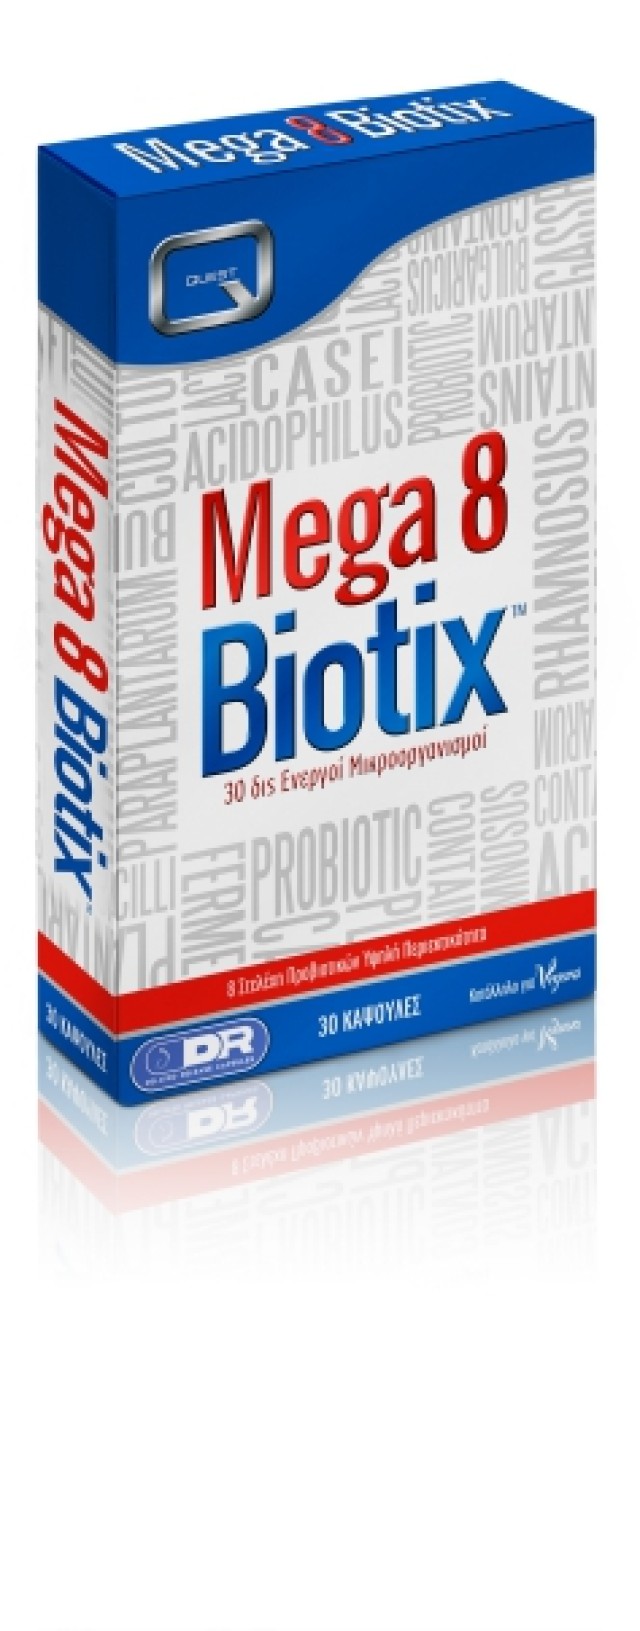 Quest Mega 8 Biotix 30 caps product photo